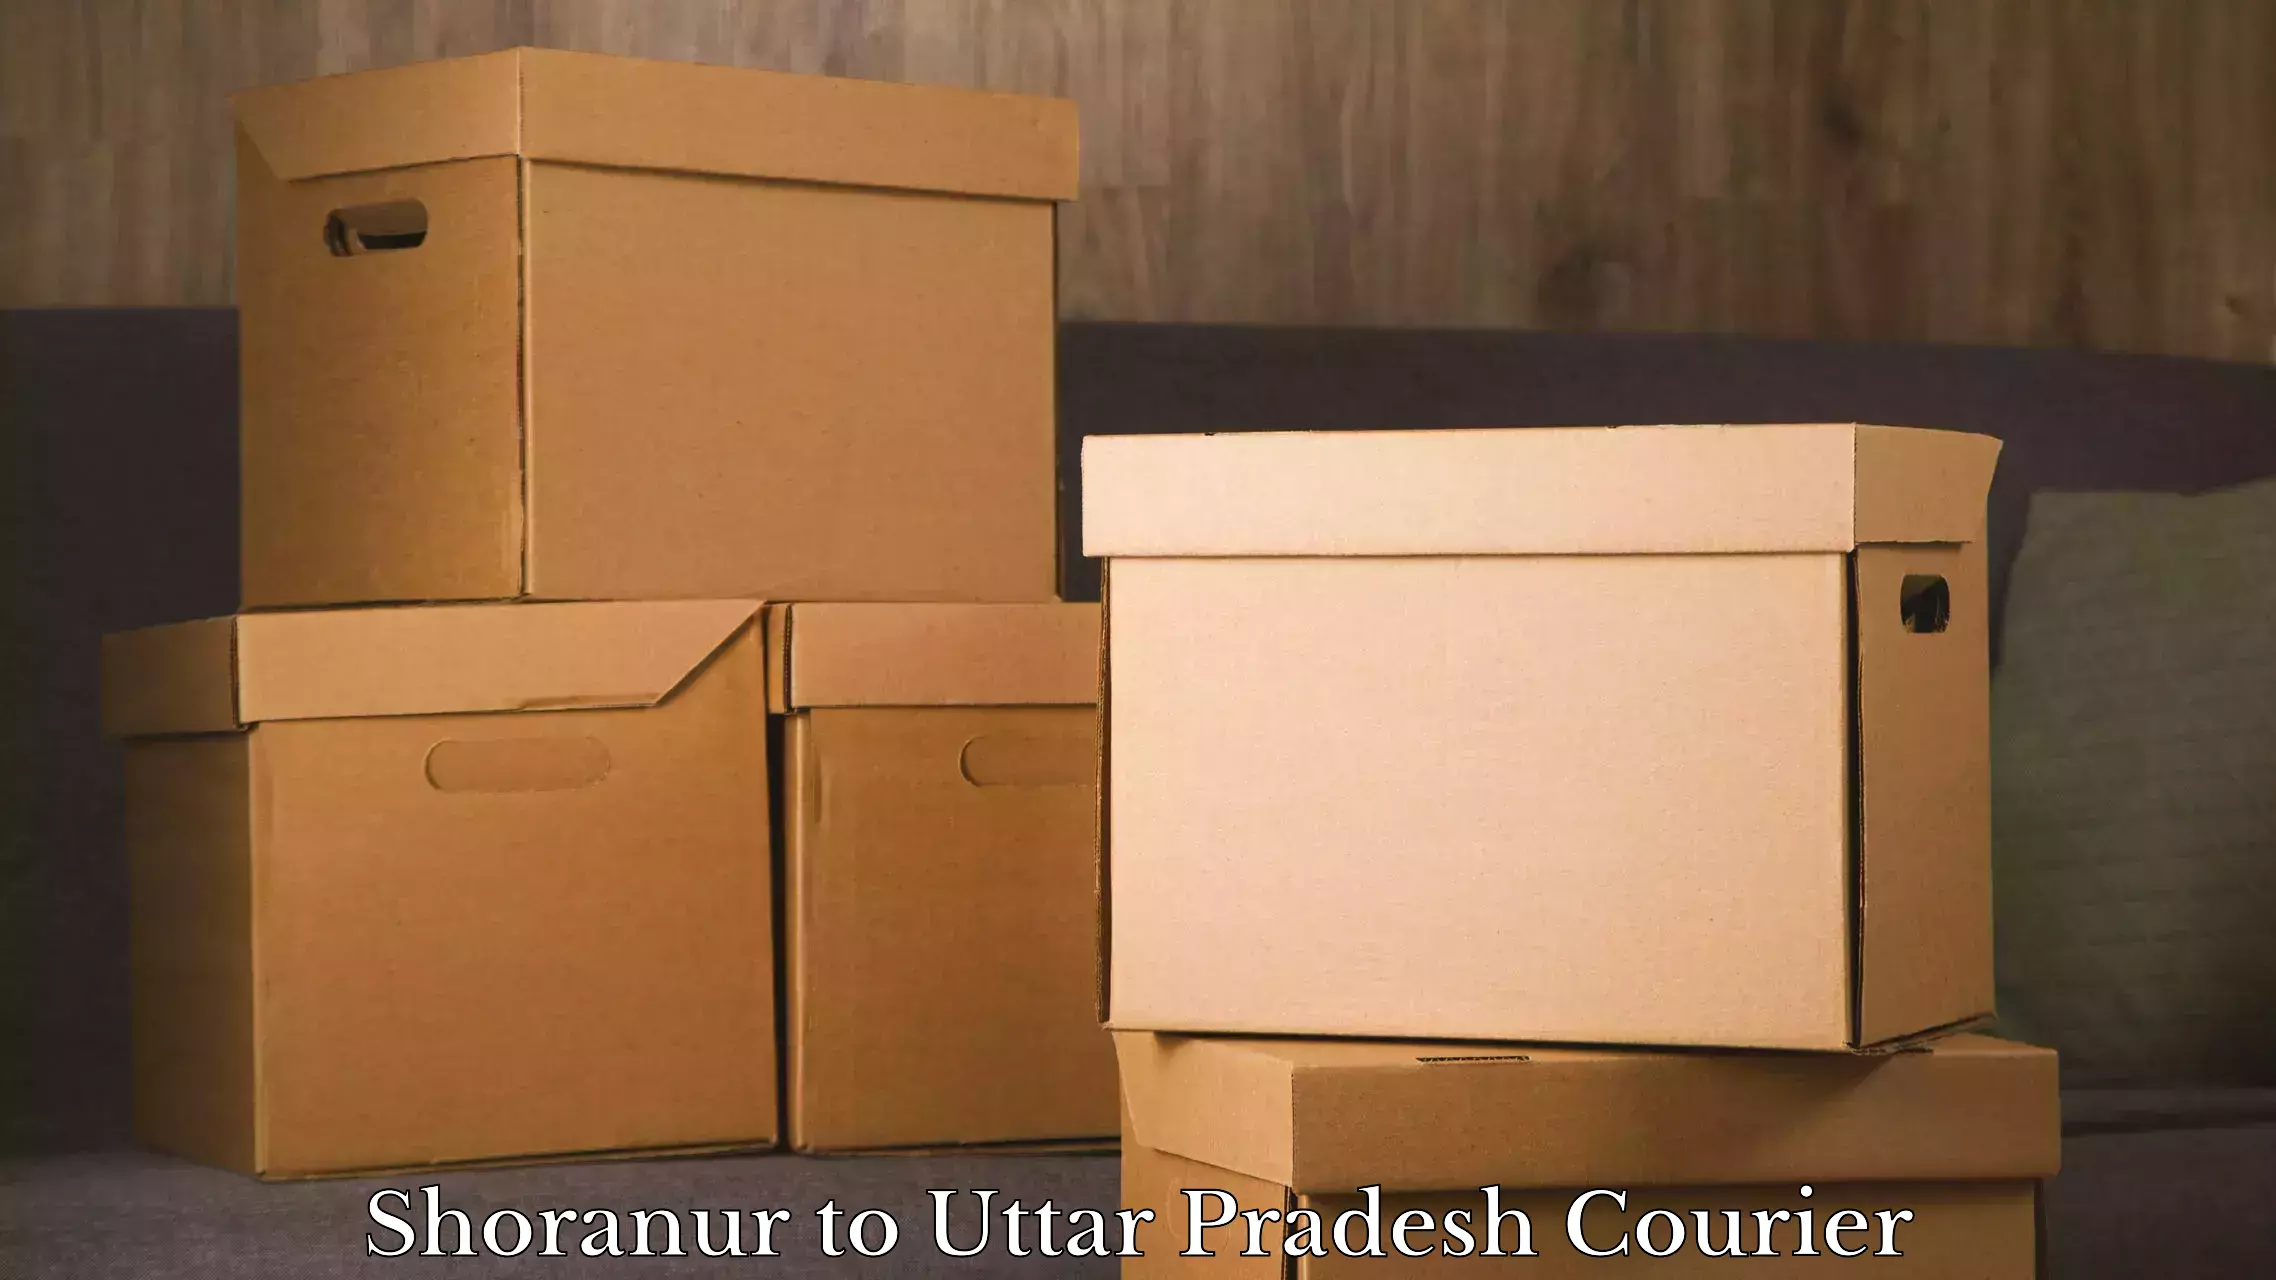 Luggage dispatch service Shoranur to Hamirpur Uttar Pradesh